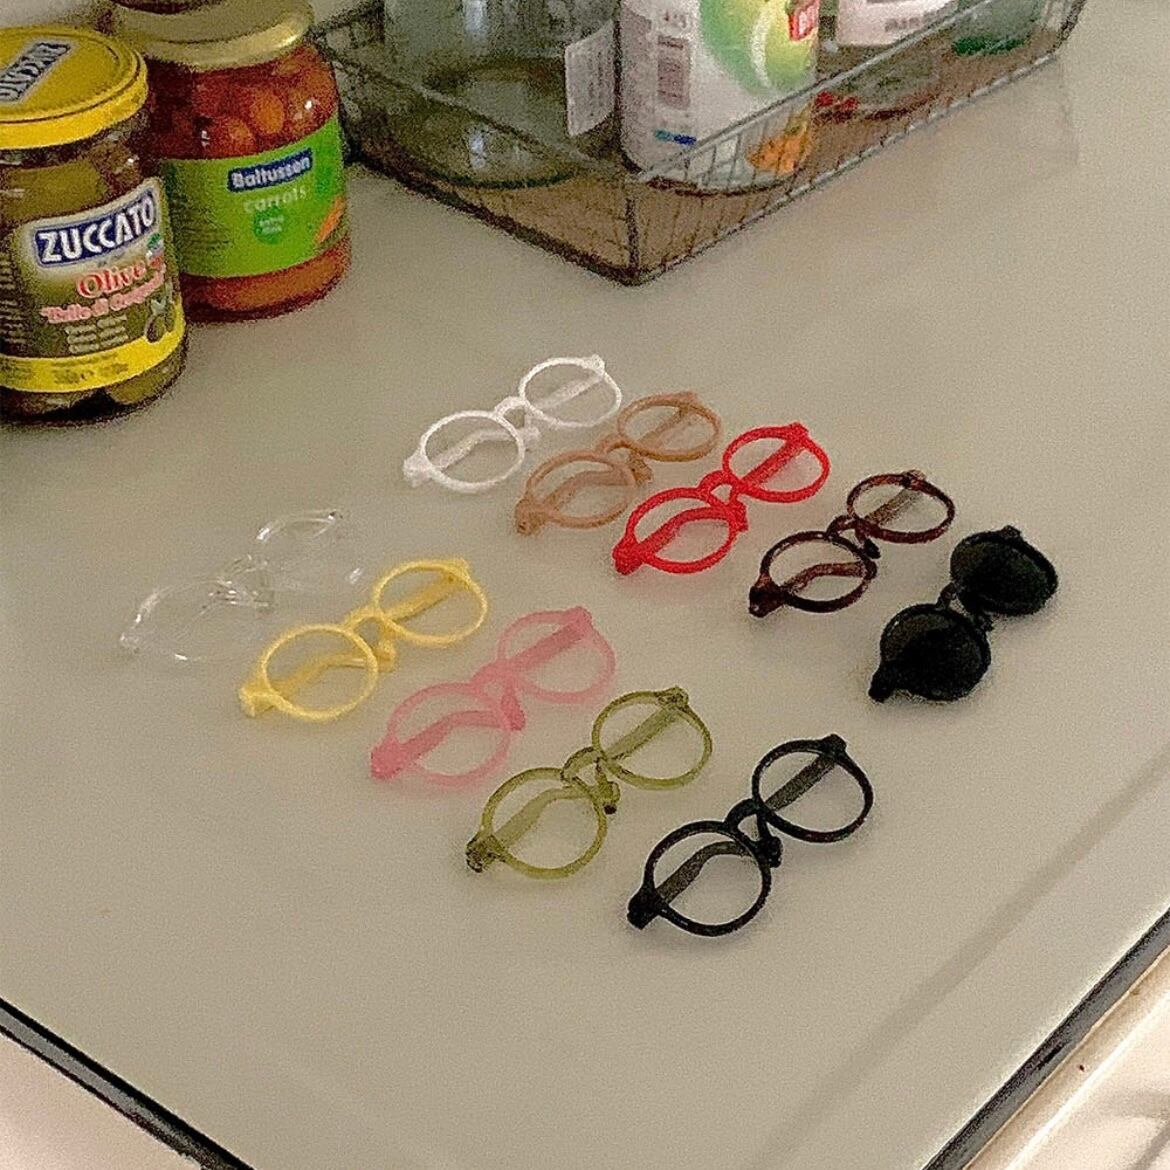 【seenii】glasses (10 colors)